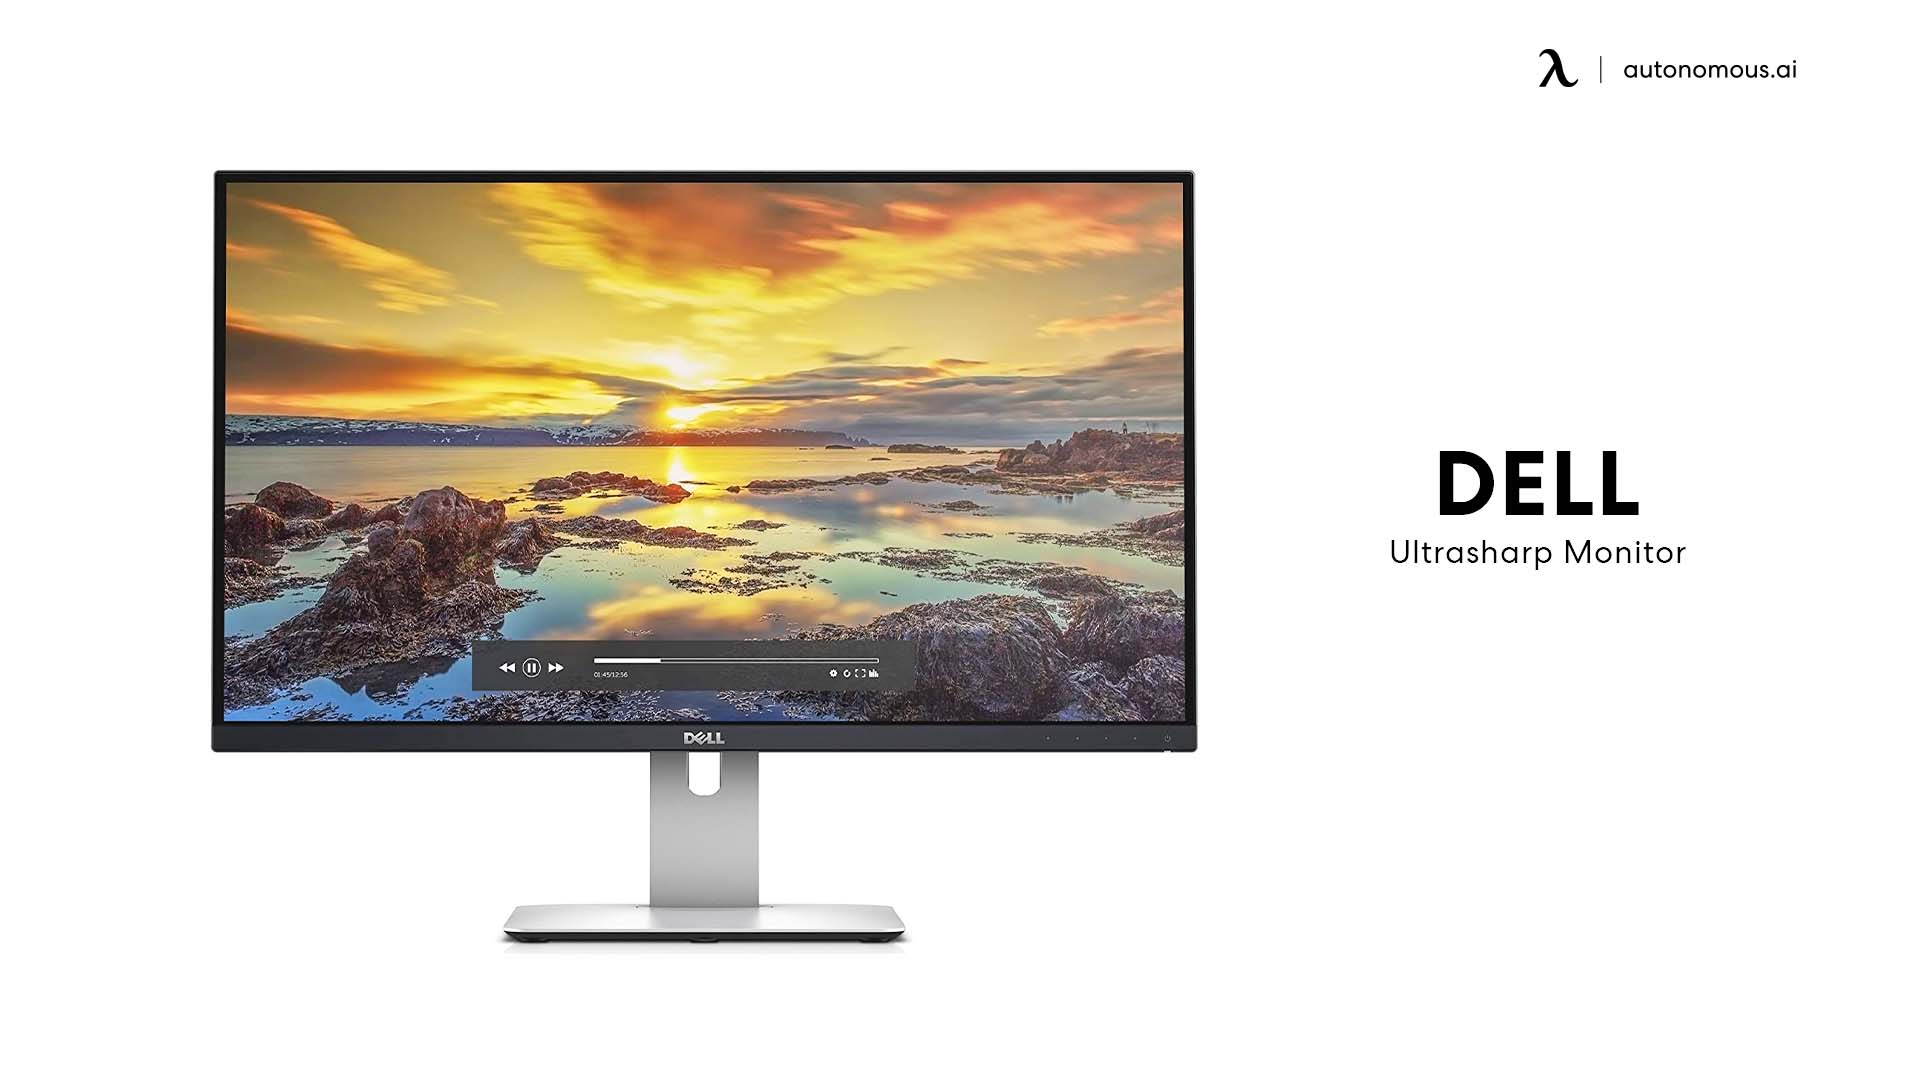 Dell UltraSharp for programmer monitor setup